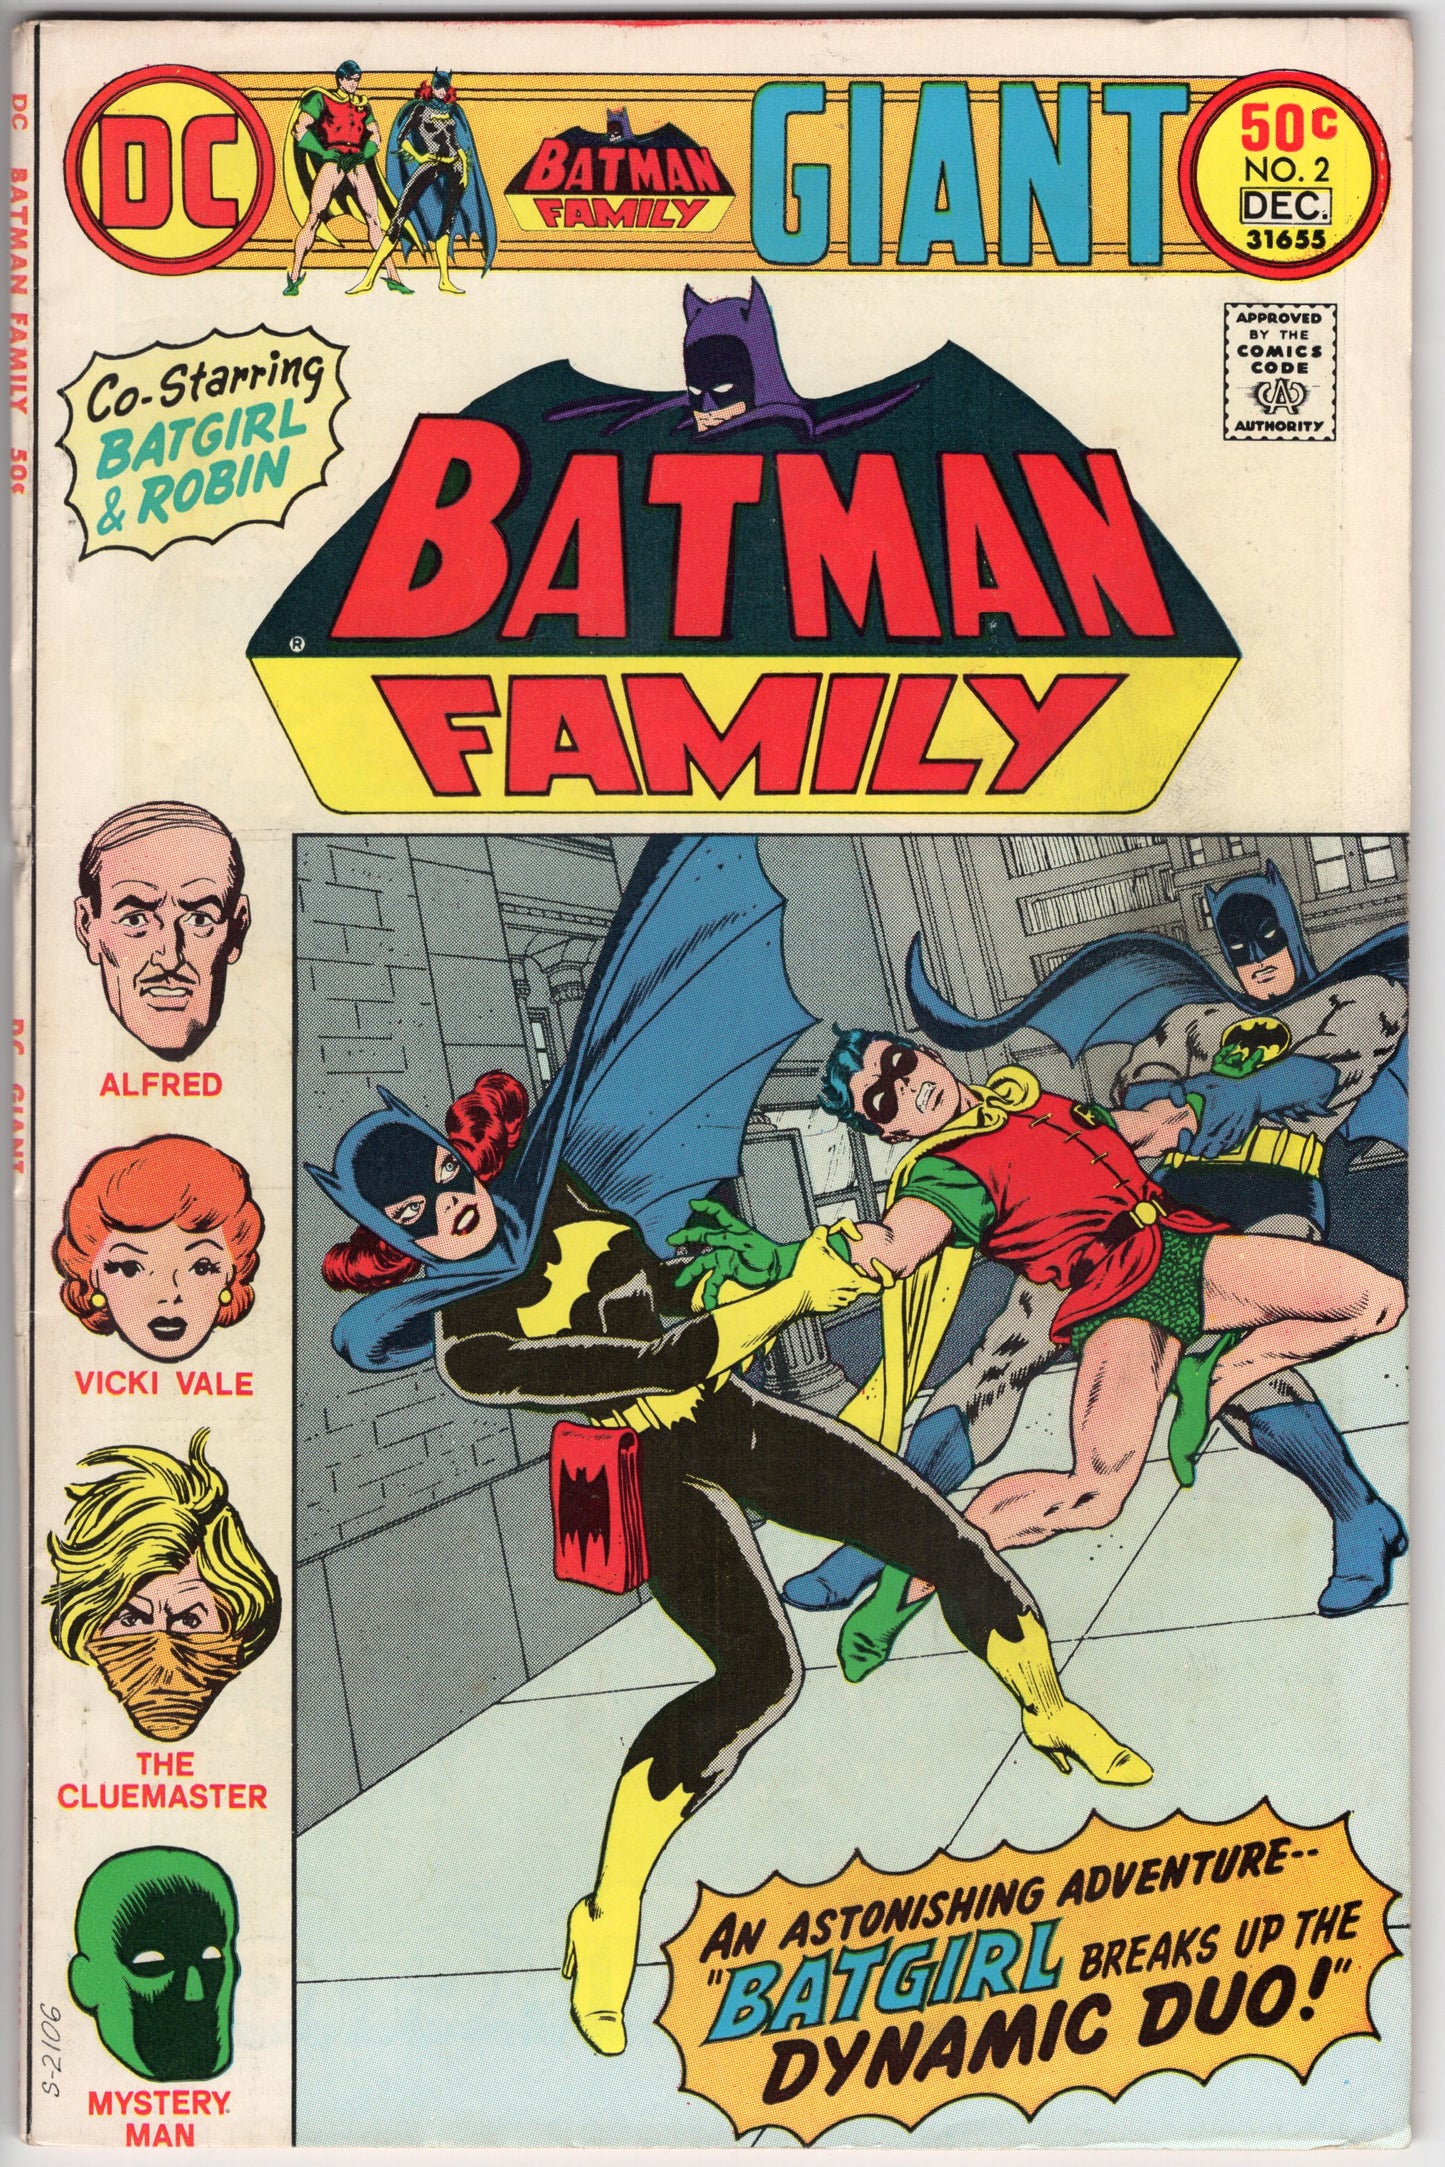 Batman Family Comics - Issue #2 "Featuring Batgirl" (Dec. 1975 - DC Comics) FN-